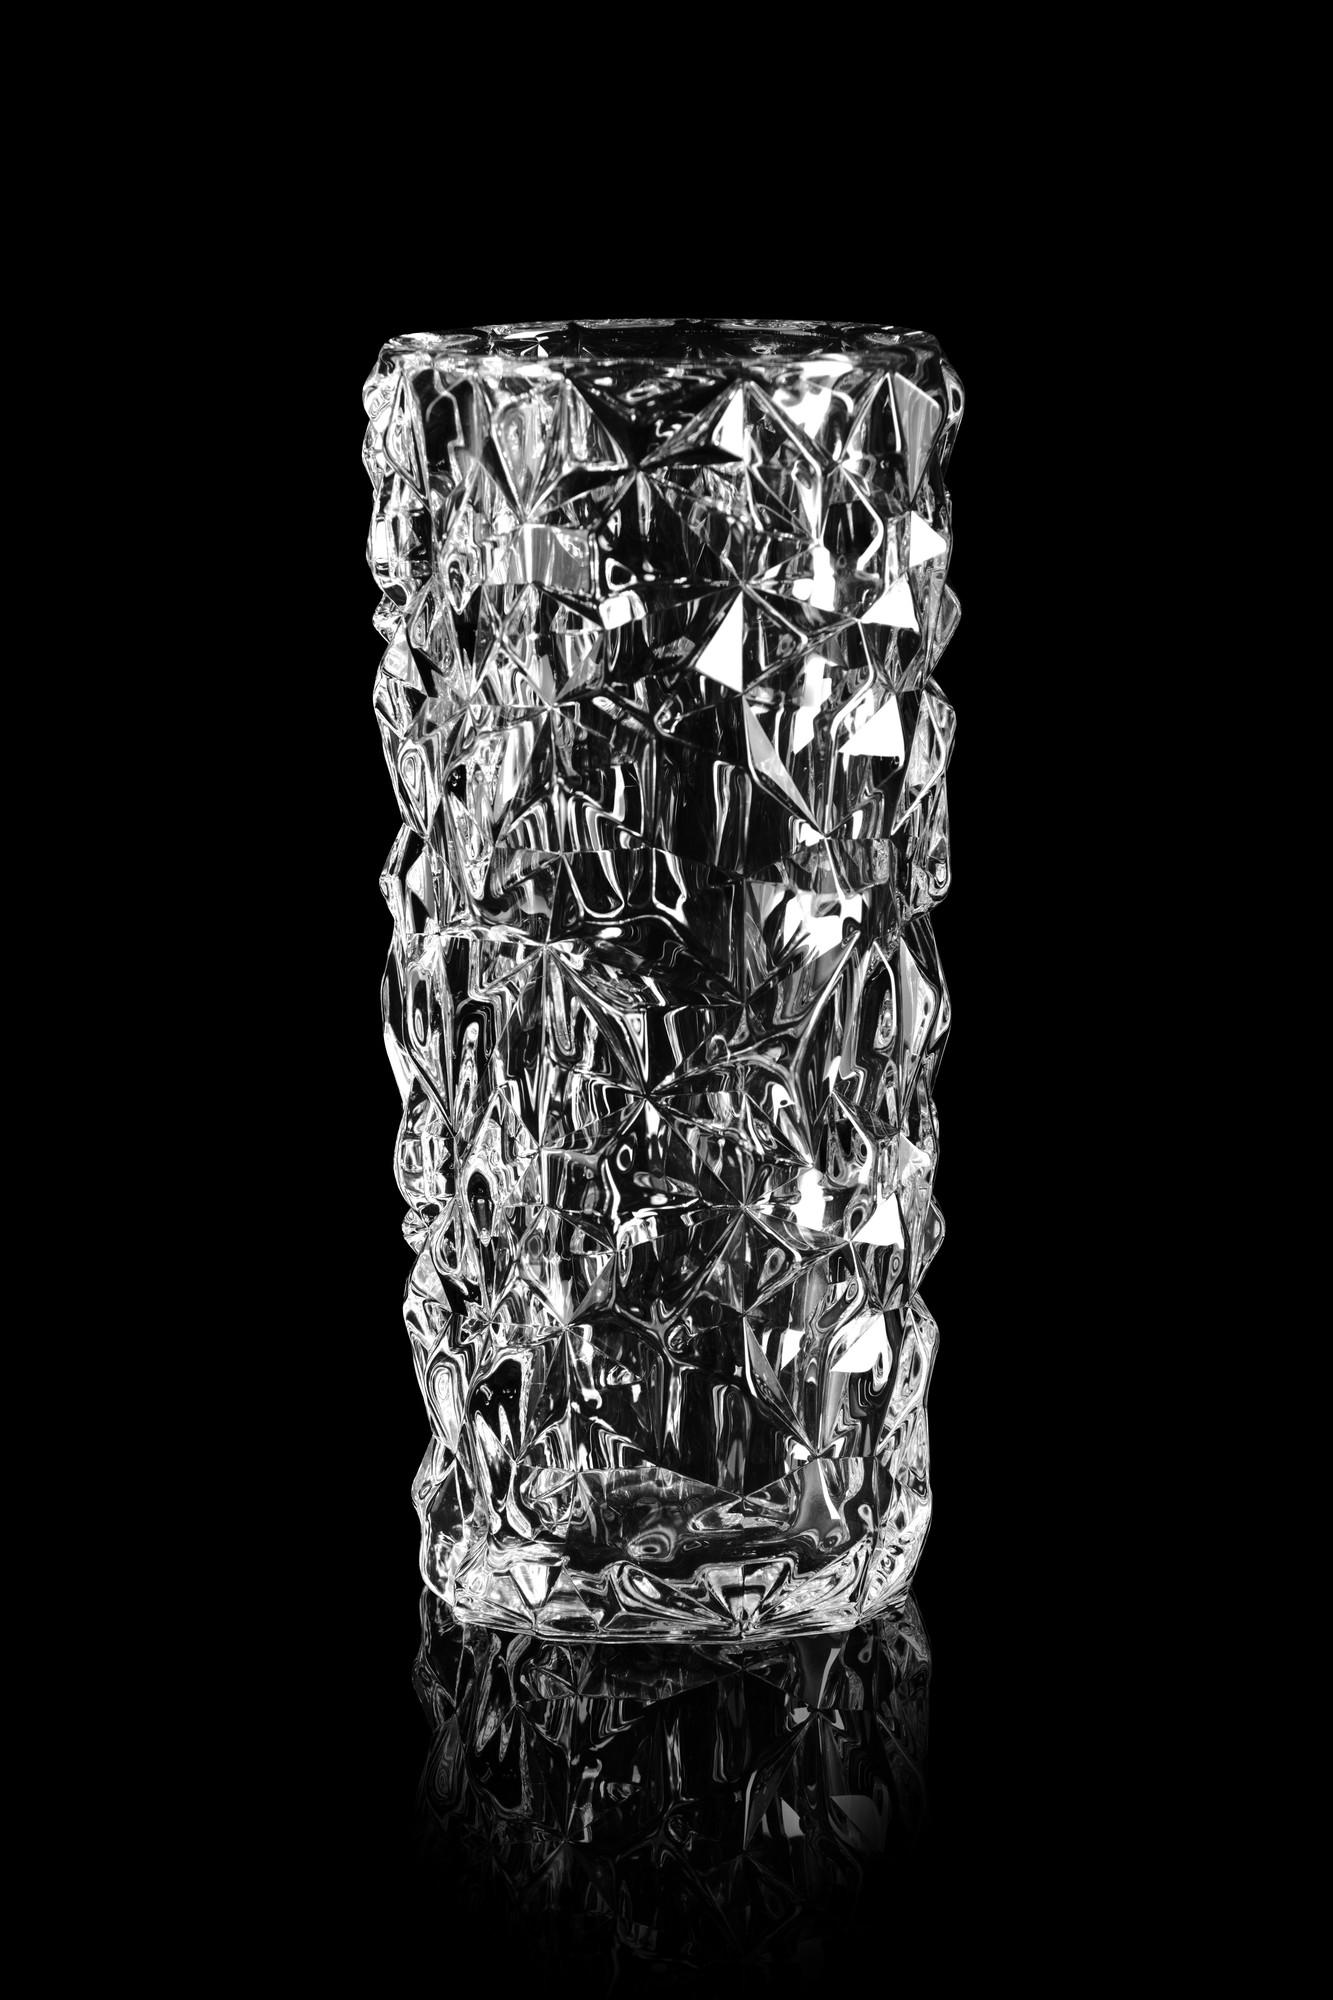 La collection Carat est basée sur une interprétation contemporaine du verre taillé traditionnel qui a fait la renommée mondiale d'Orrefors. Le petit vase est recouvert du motif asymétrique caractéristique de la collection, qui produit de magnifiques